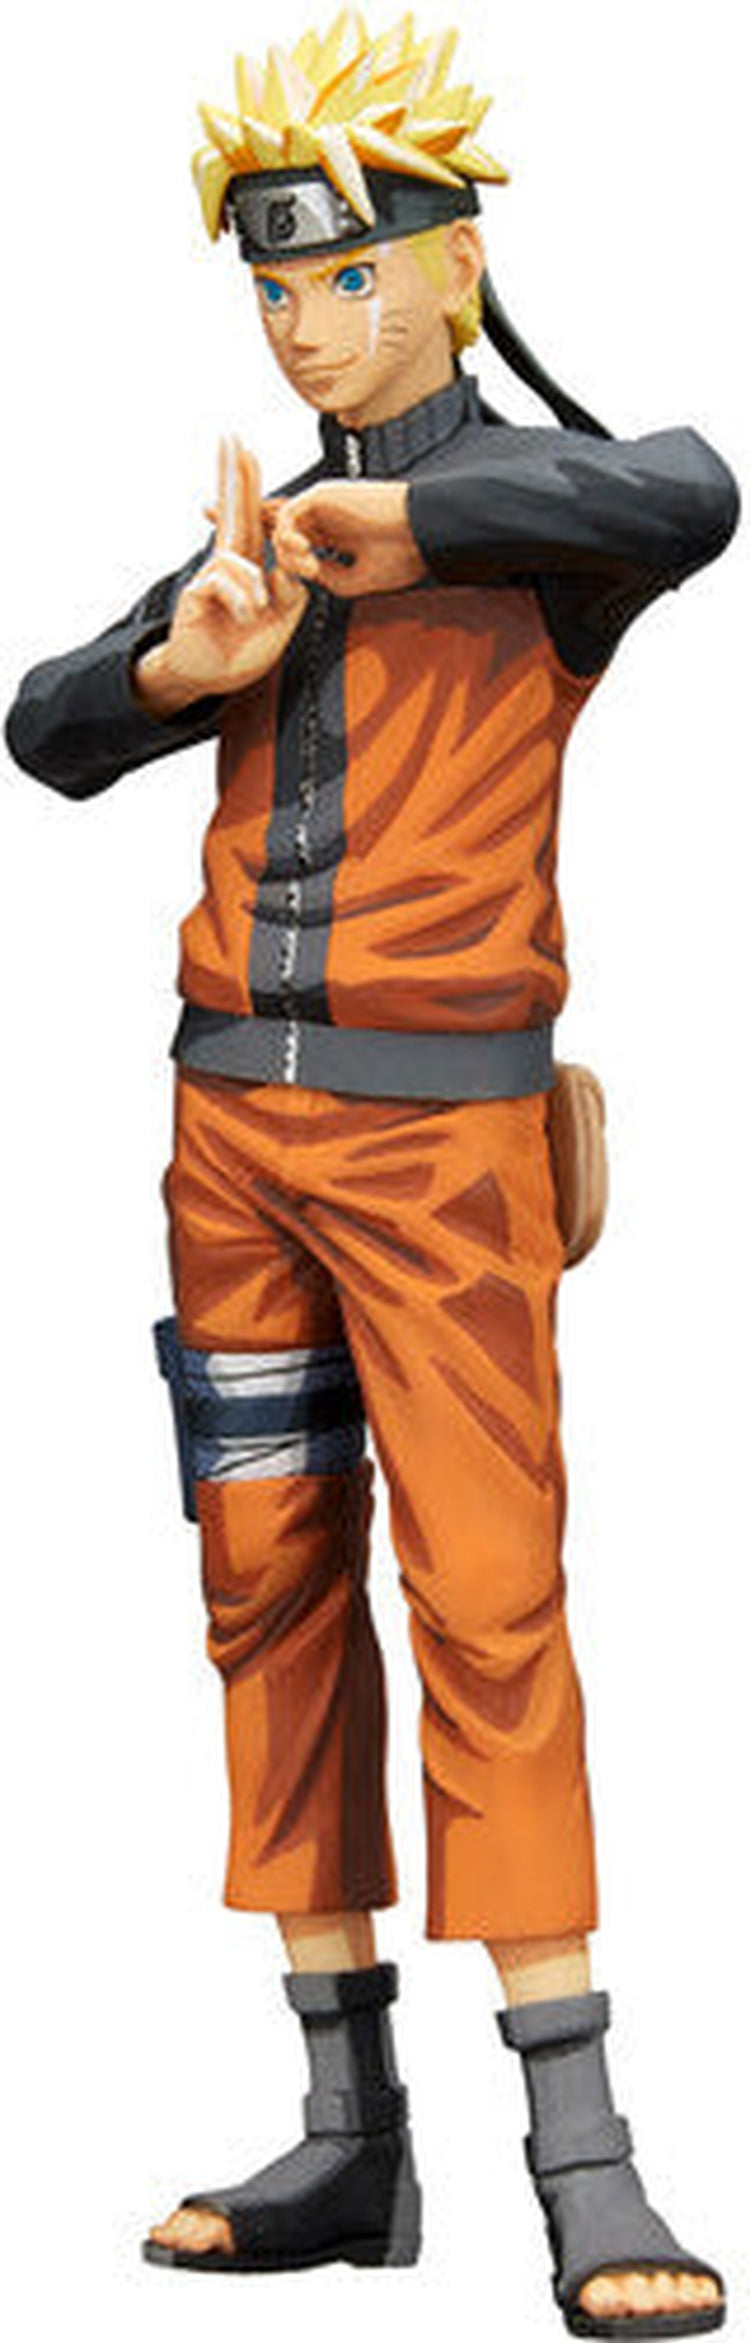 BanPresto - Naruto Shippuden Grandista nero Uzumaki Naruto Statue